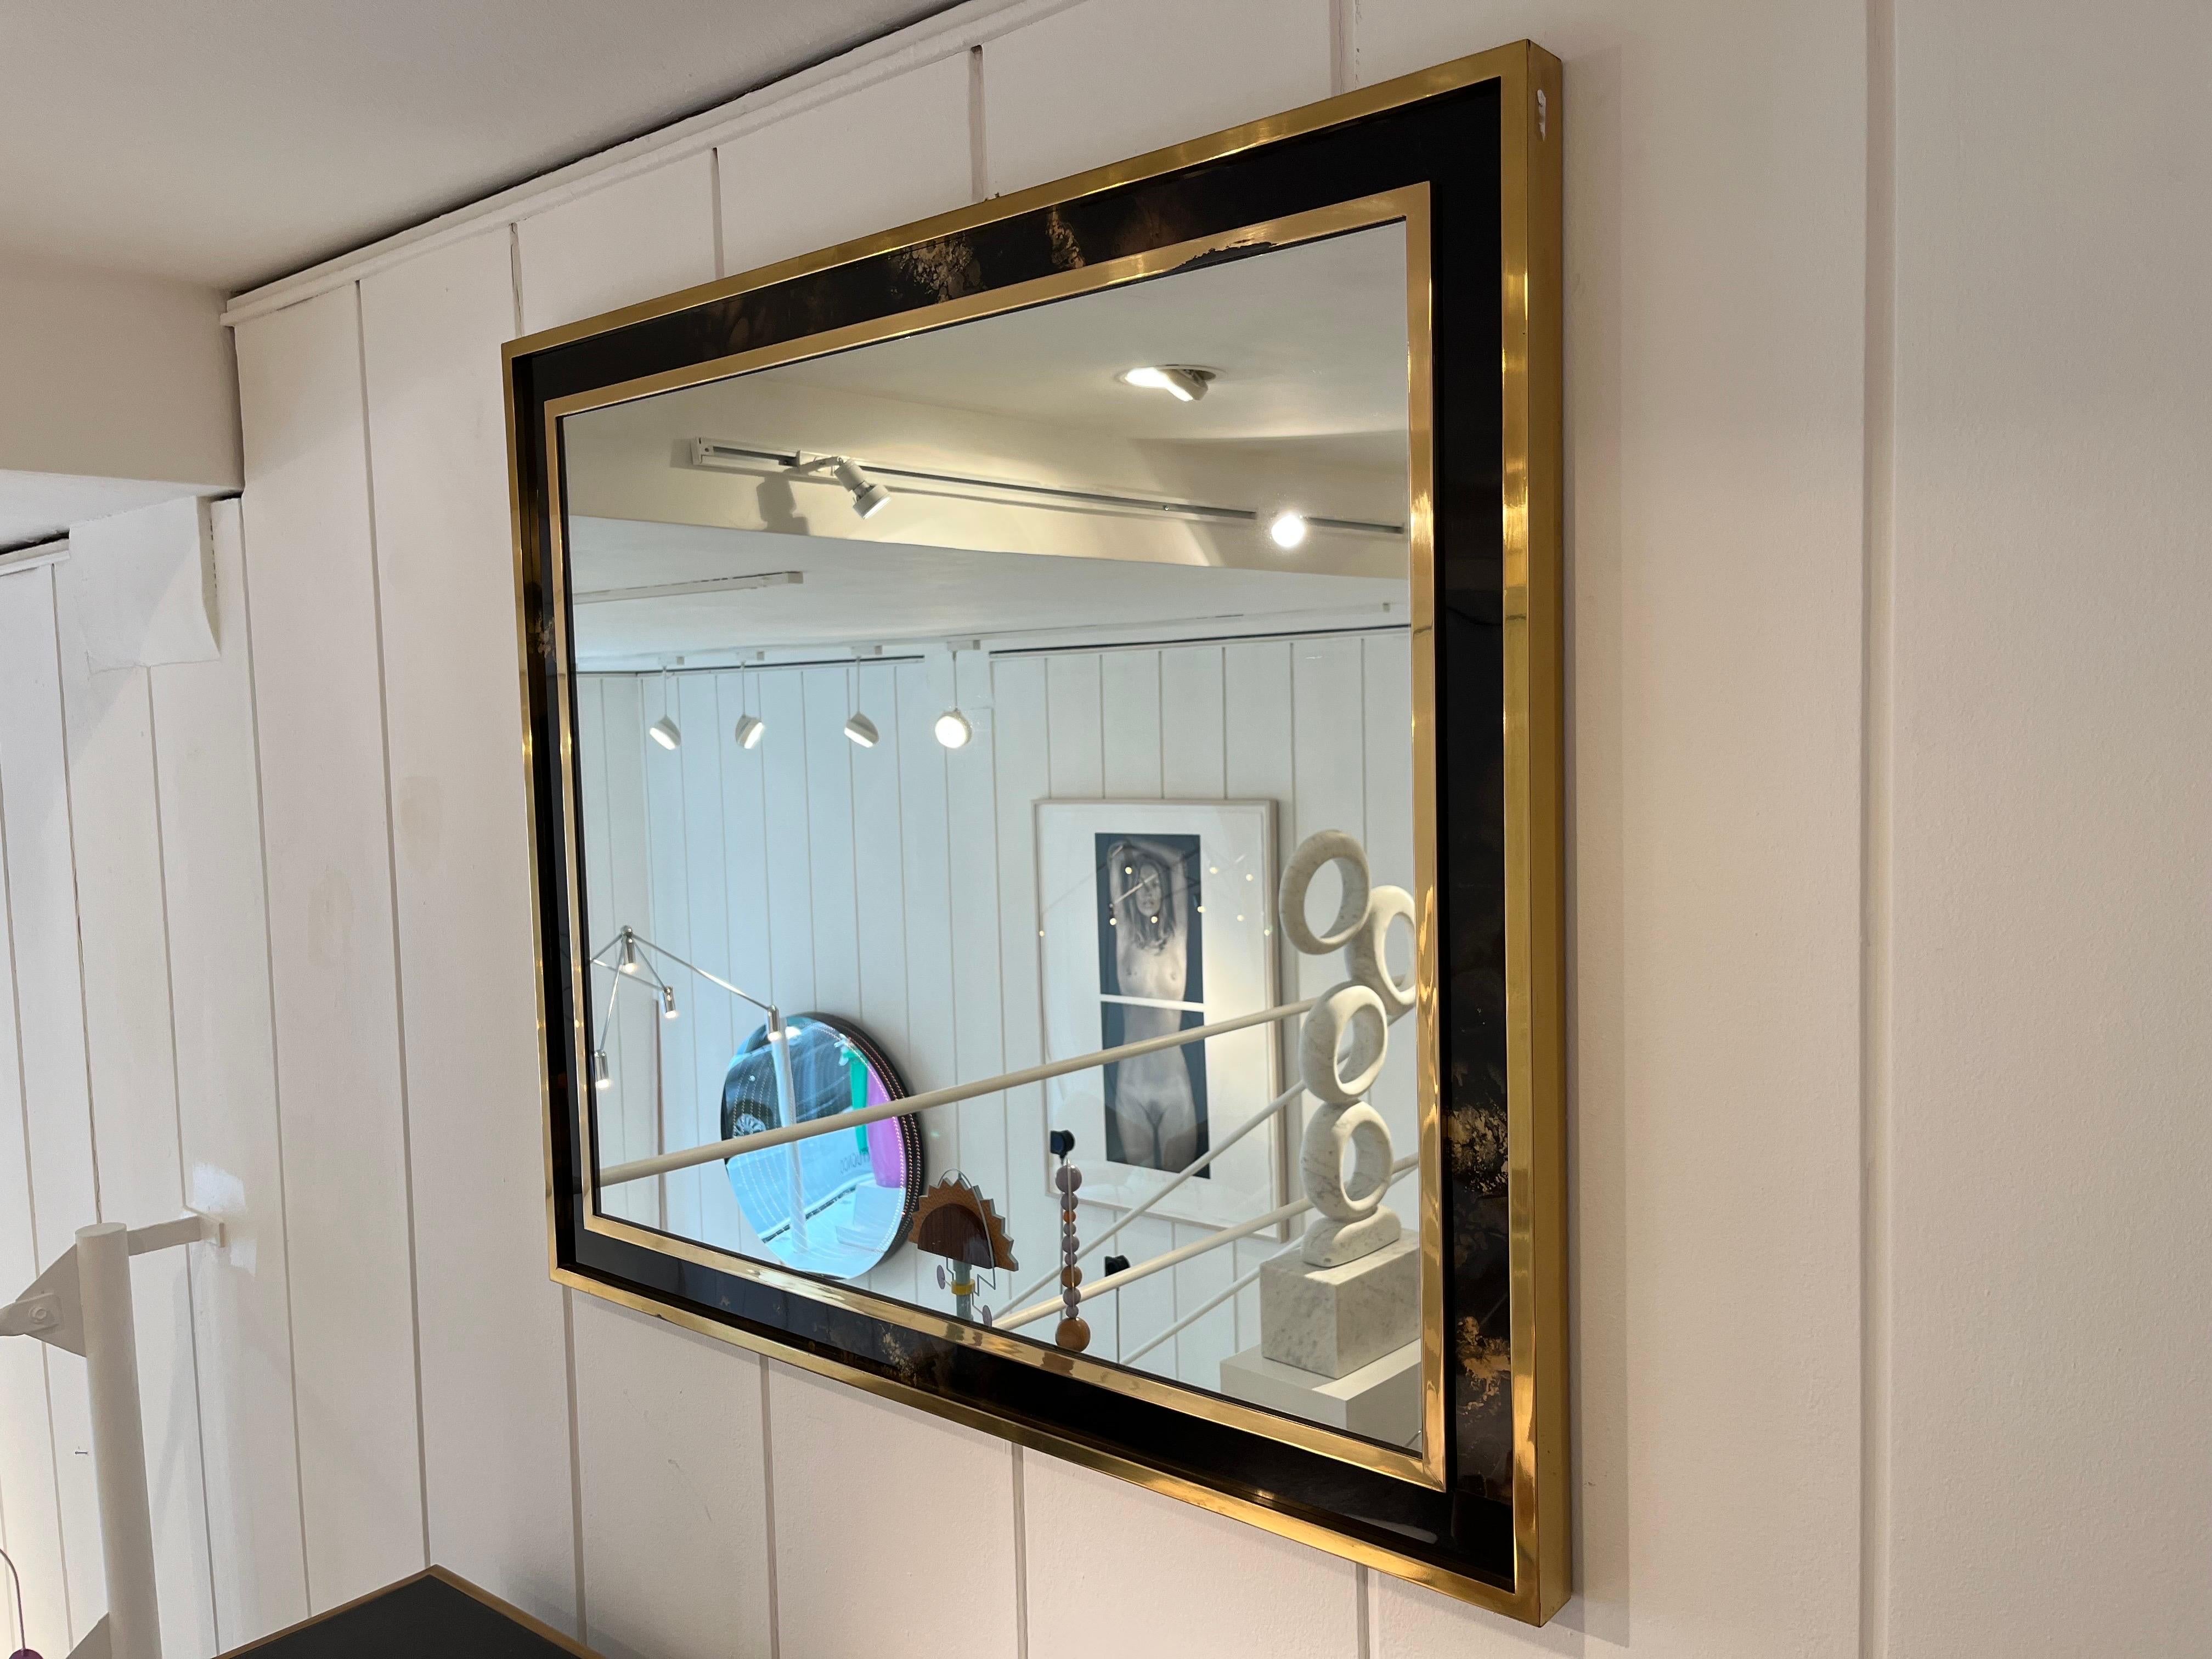 1970S  Miroir de la Maison Jansen
Laiton  avec bois laqué à la feuille d'or

